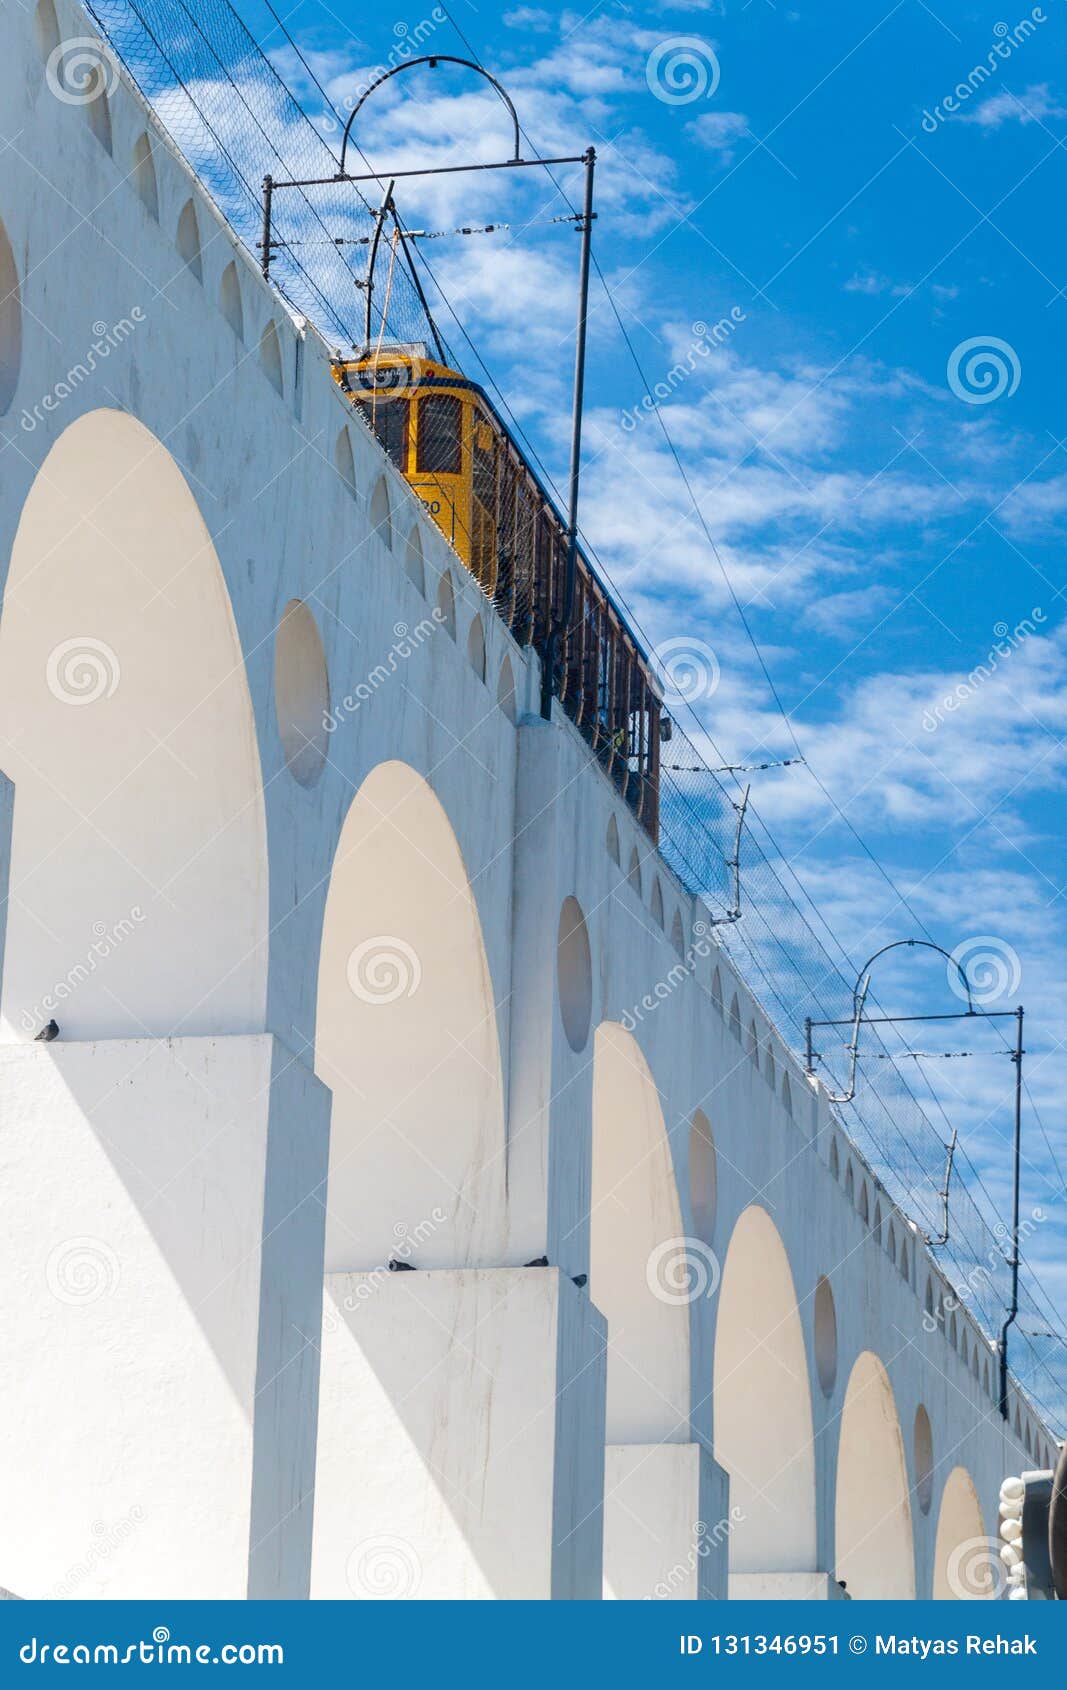 tram rides on carioca aqueduct